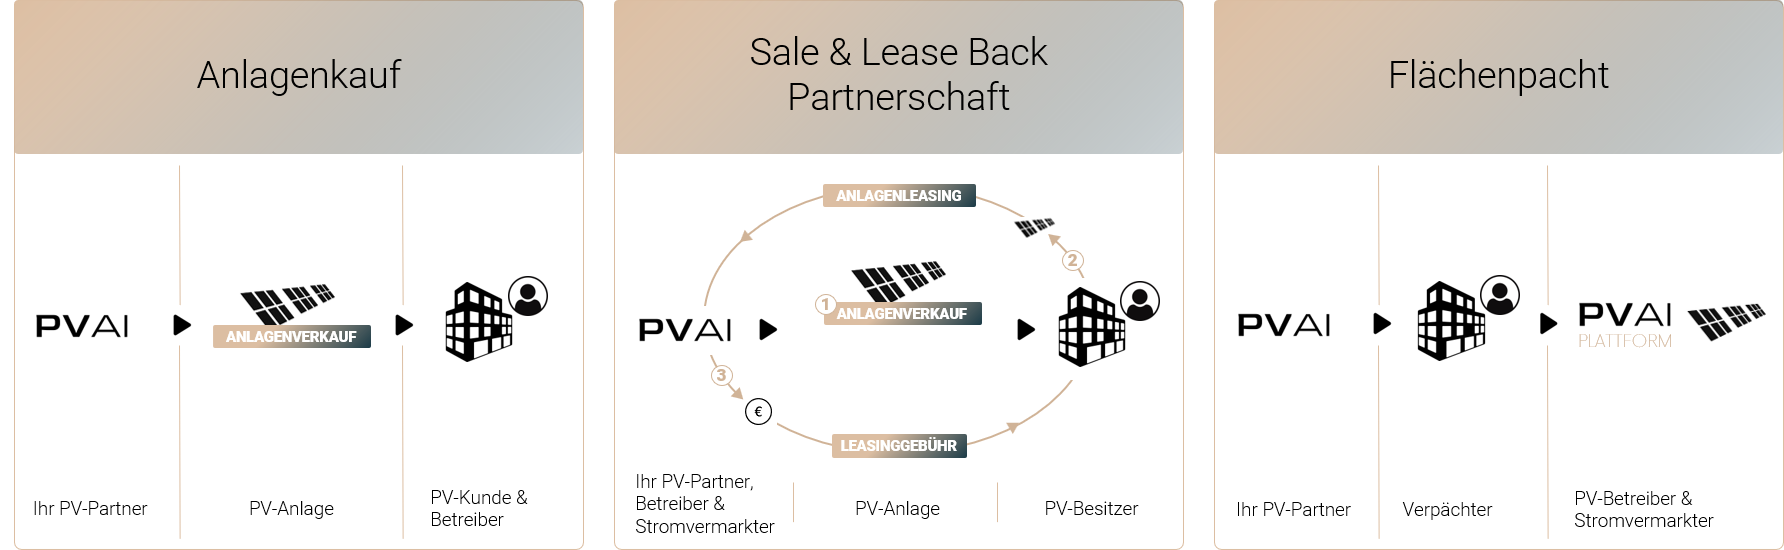 PVAI-Finanzierung-Overview-2